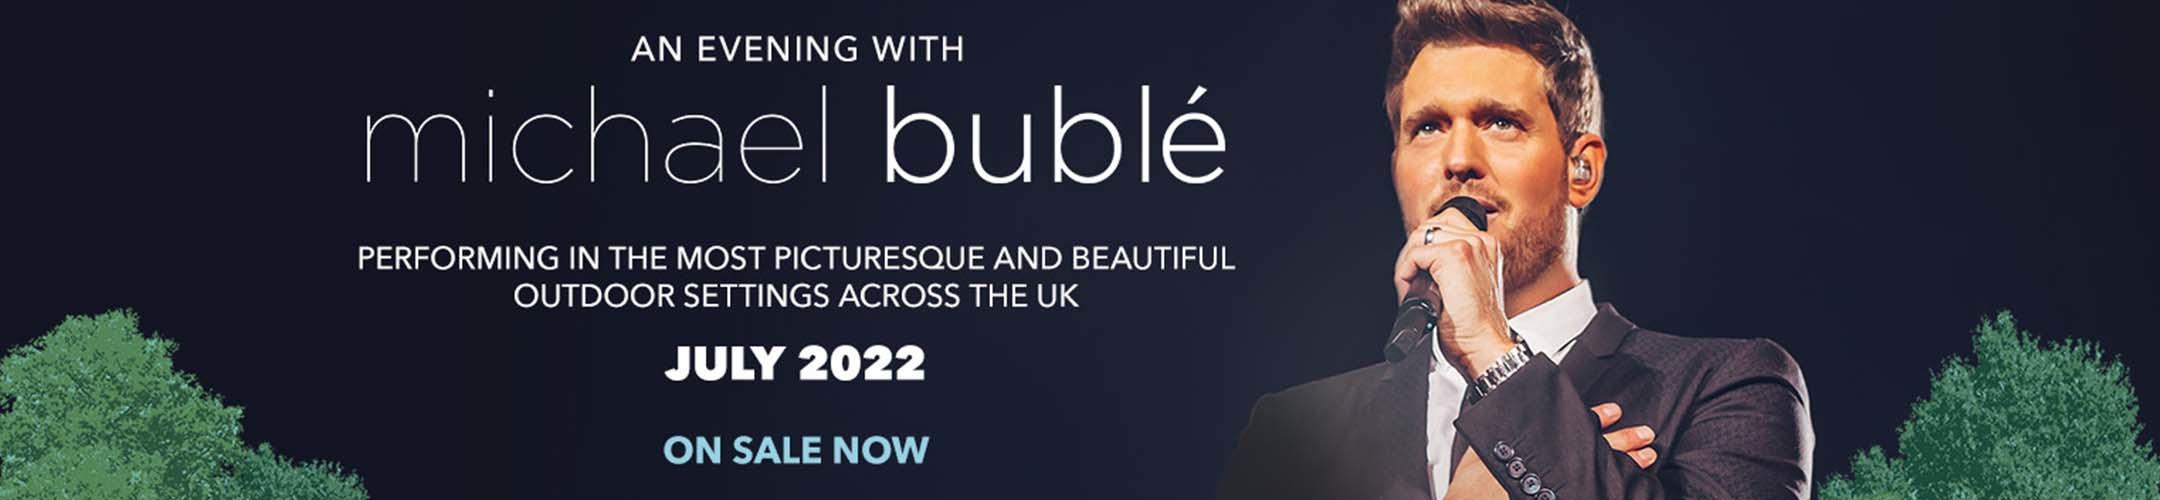 Michael Buble Tour Schedule 2022 Michael Bublé Tour